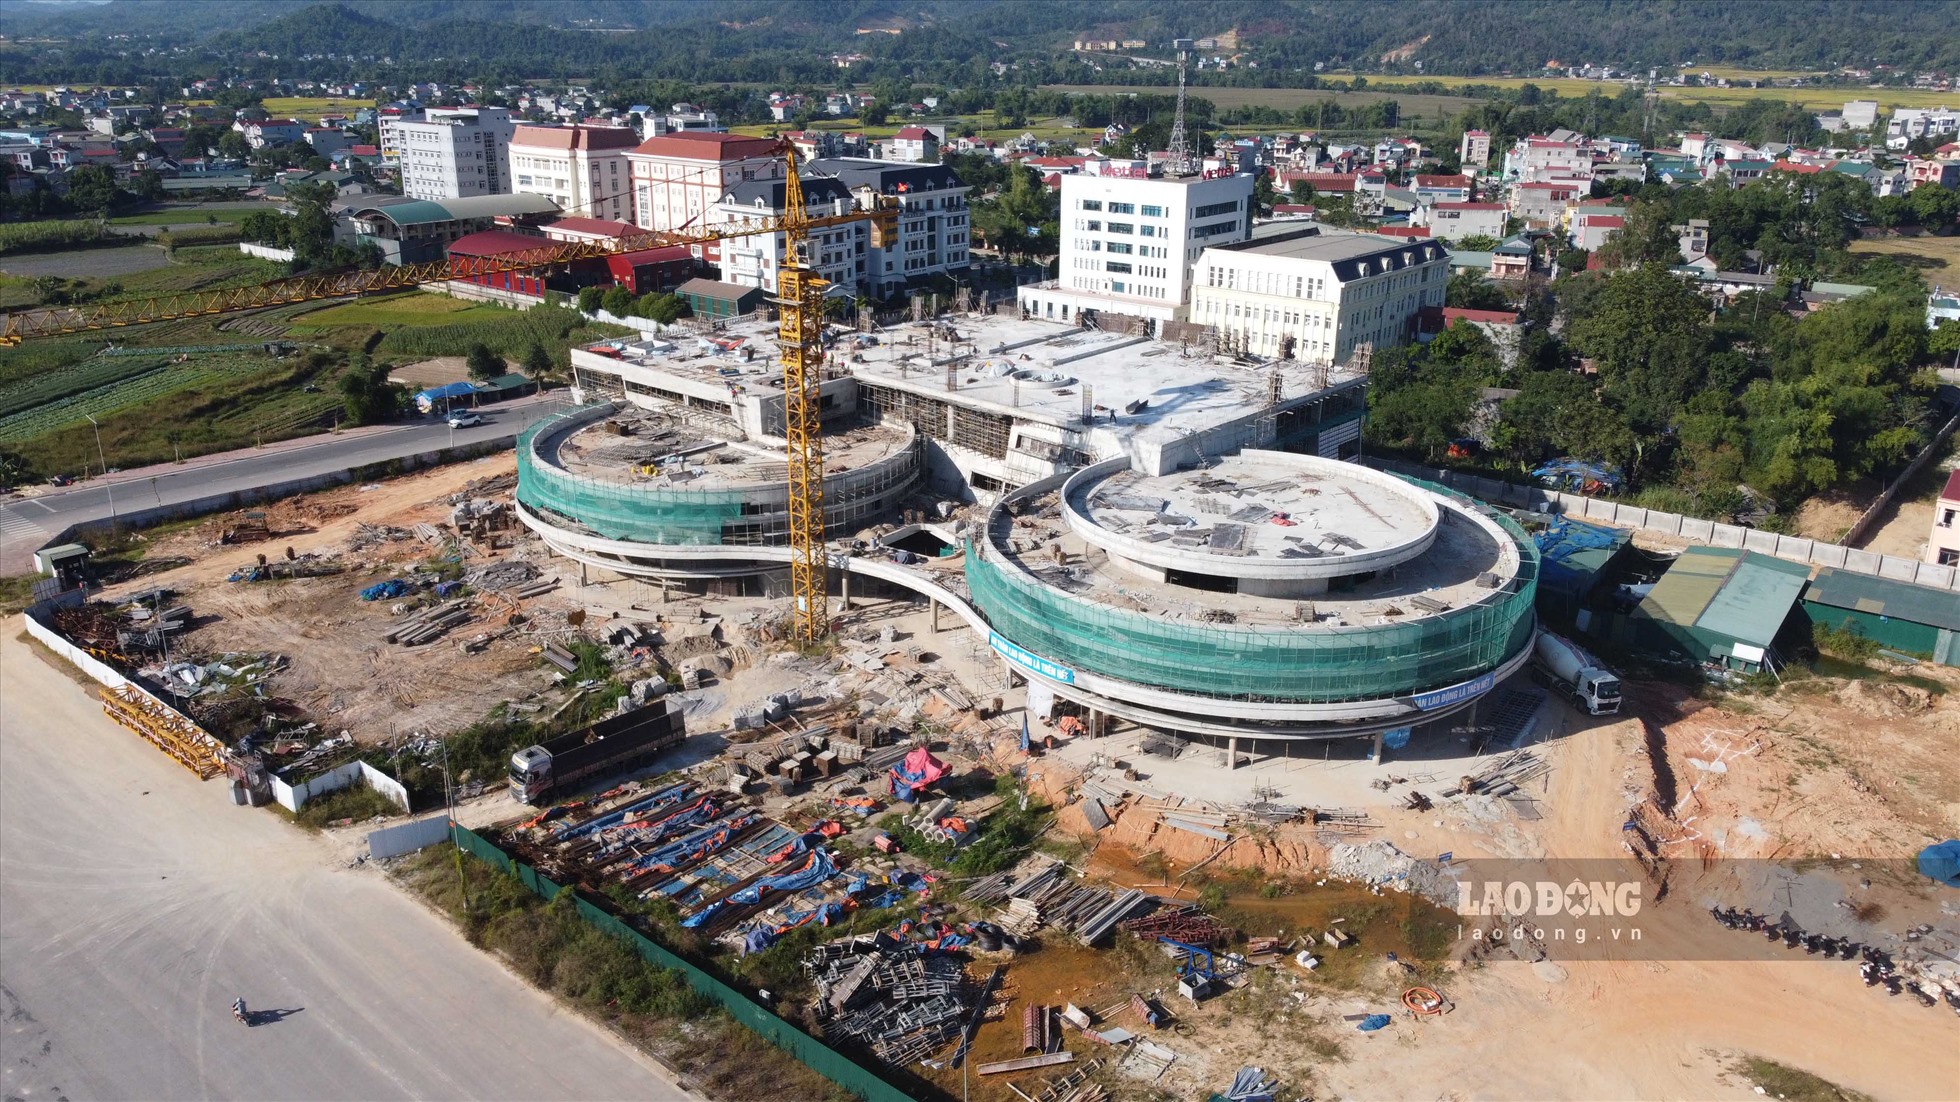 Dự án Bảo tàng tỉnh Cao Bằng có tổng diện tích sử dụng 2,2 ha, với kinh phí đầu tư 376 tỷ đồng. Công trình được khởi công xây dựng từ tháng 10.2021 và dự kiến hoàn thành vào cuối tháng 2.2023 do Ban Quản lý dự án đầu tư và xây dựng tỉnh Cao Bằng làm chủ đầu tư.